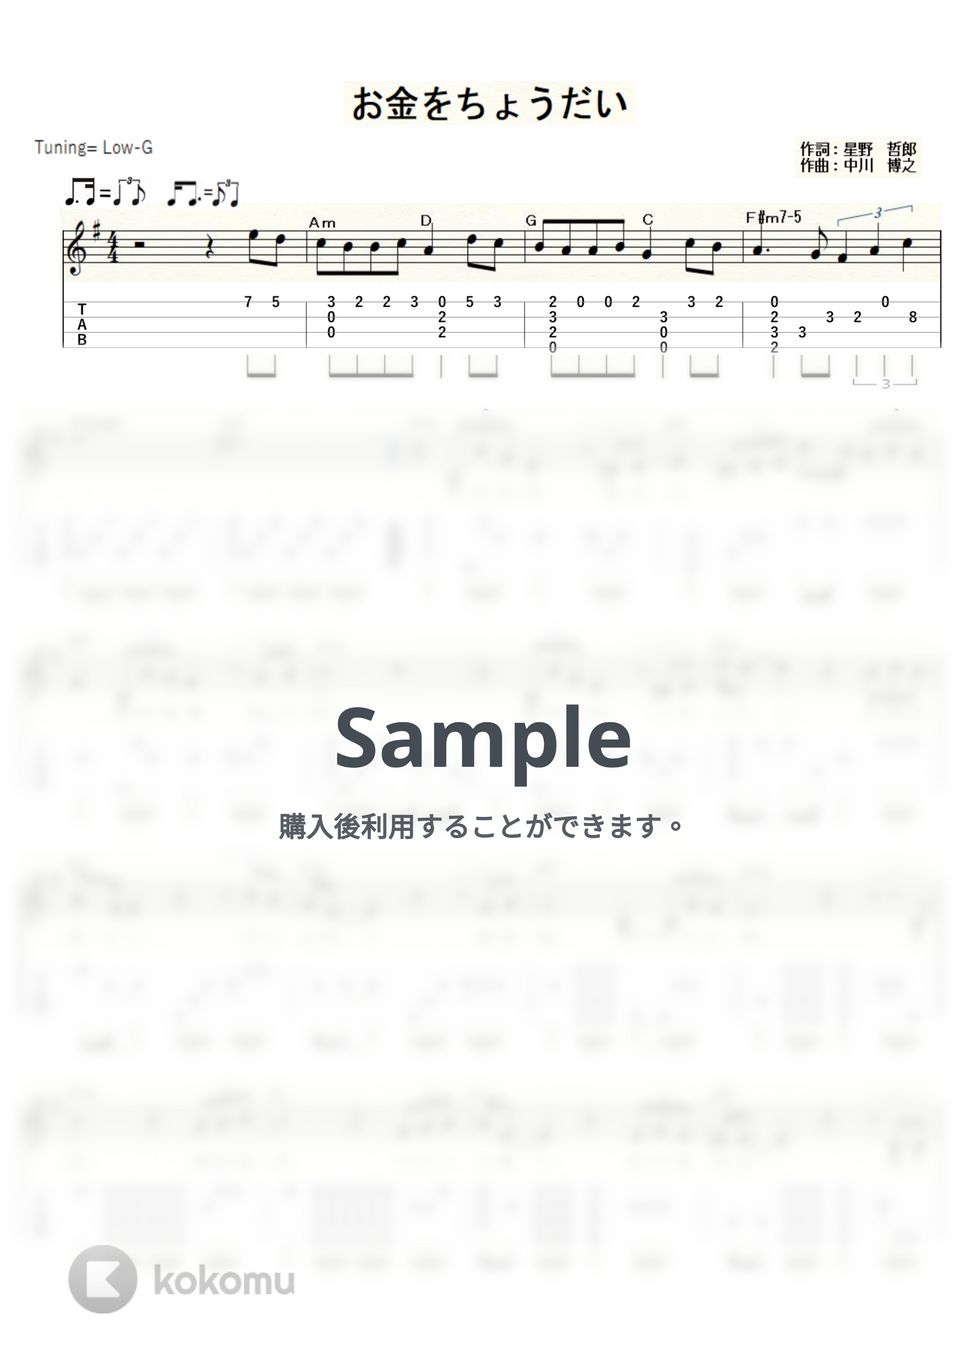 美川憲一 - お金をちょうだい (ｳｸﾚﾚｿﾛ/Low-G/中級) by ukulelepapa